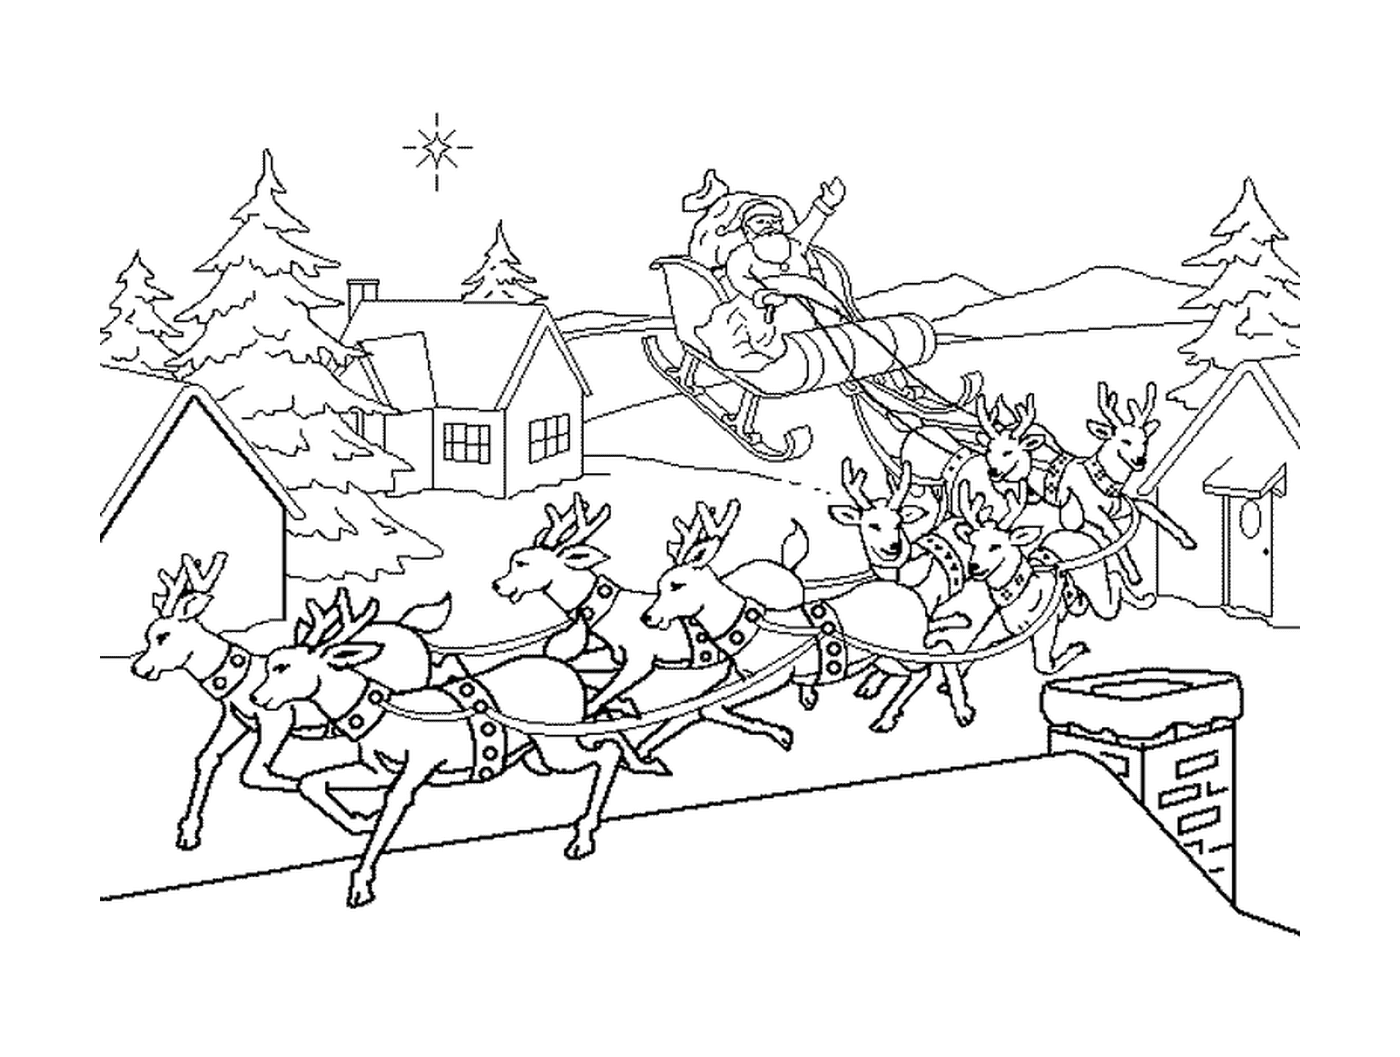  Linha de trenó do Papai Noel em uma aldeia 